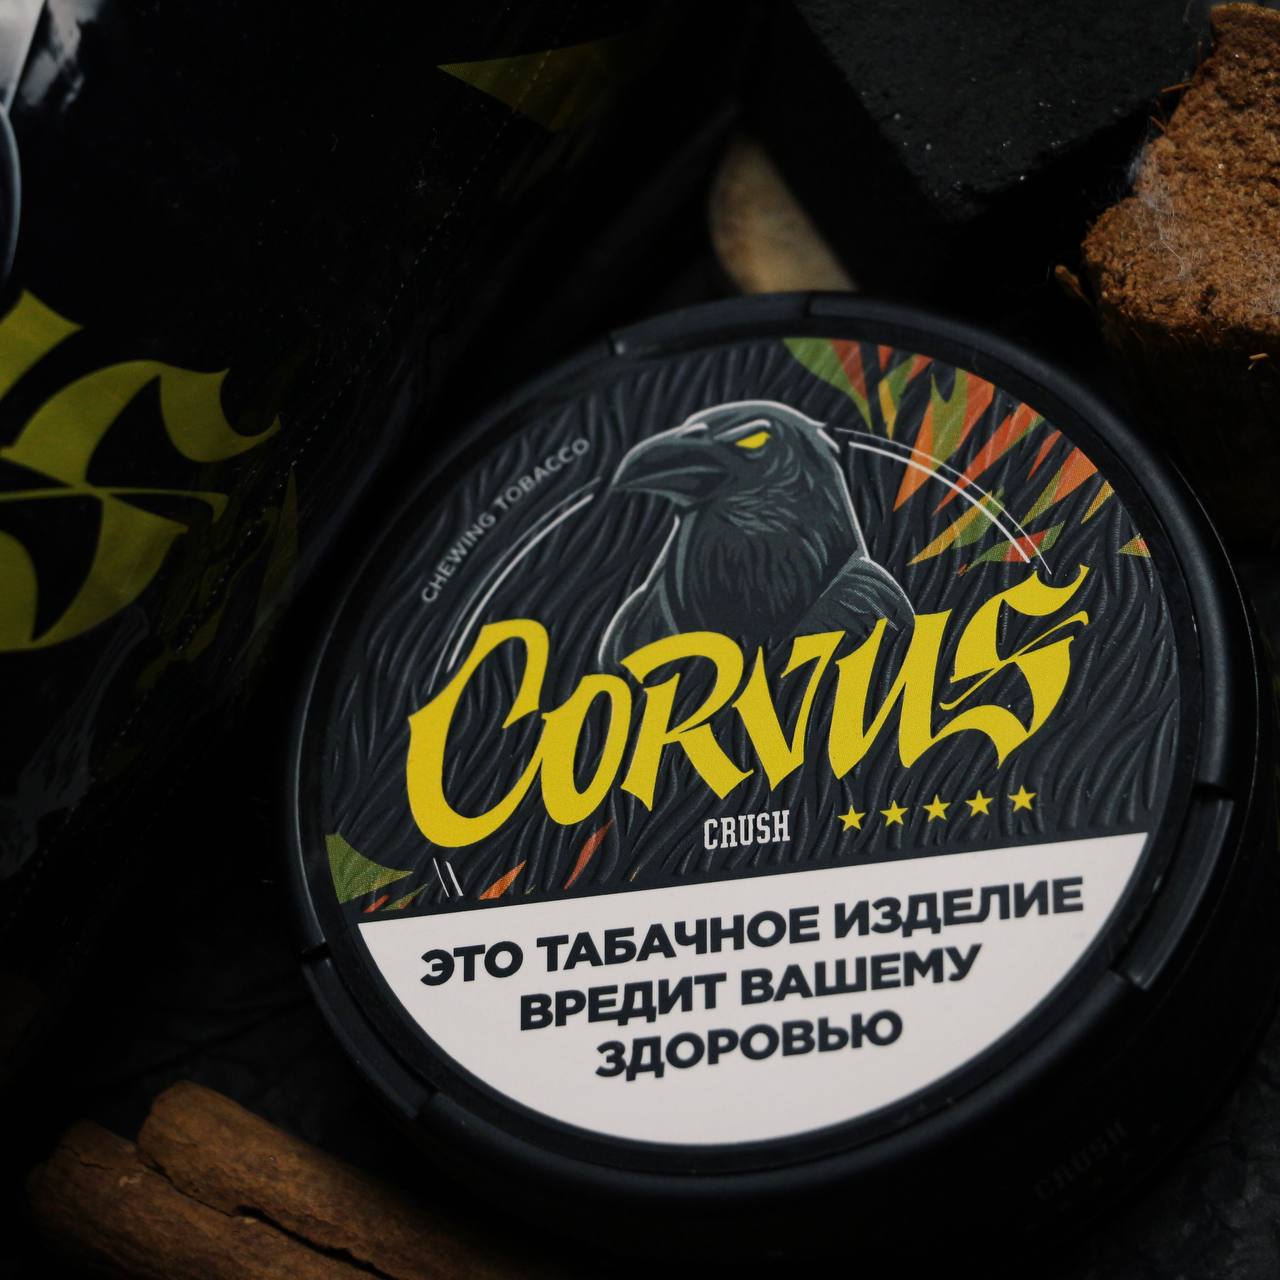 Corvus Toss жевательный табак. Жевательный табак Corvus Toss упаковка. Corvus Crush крепость.